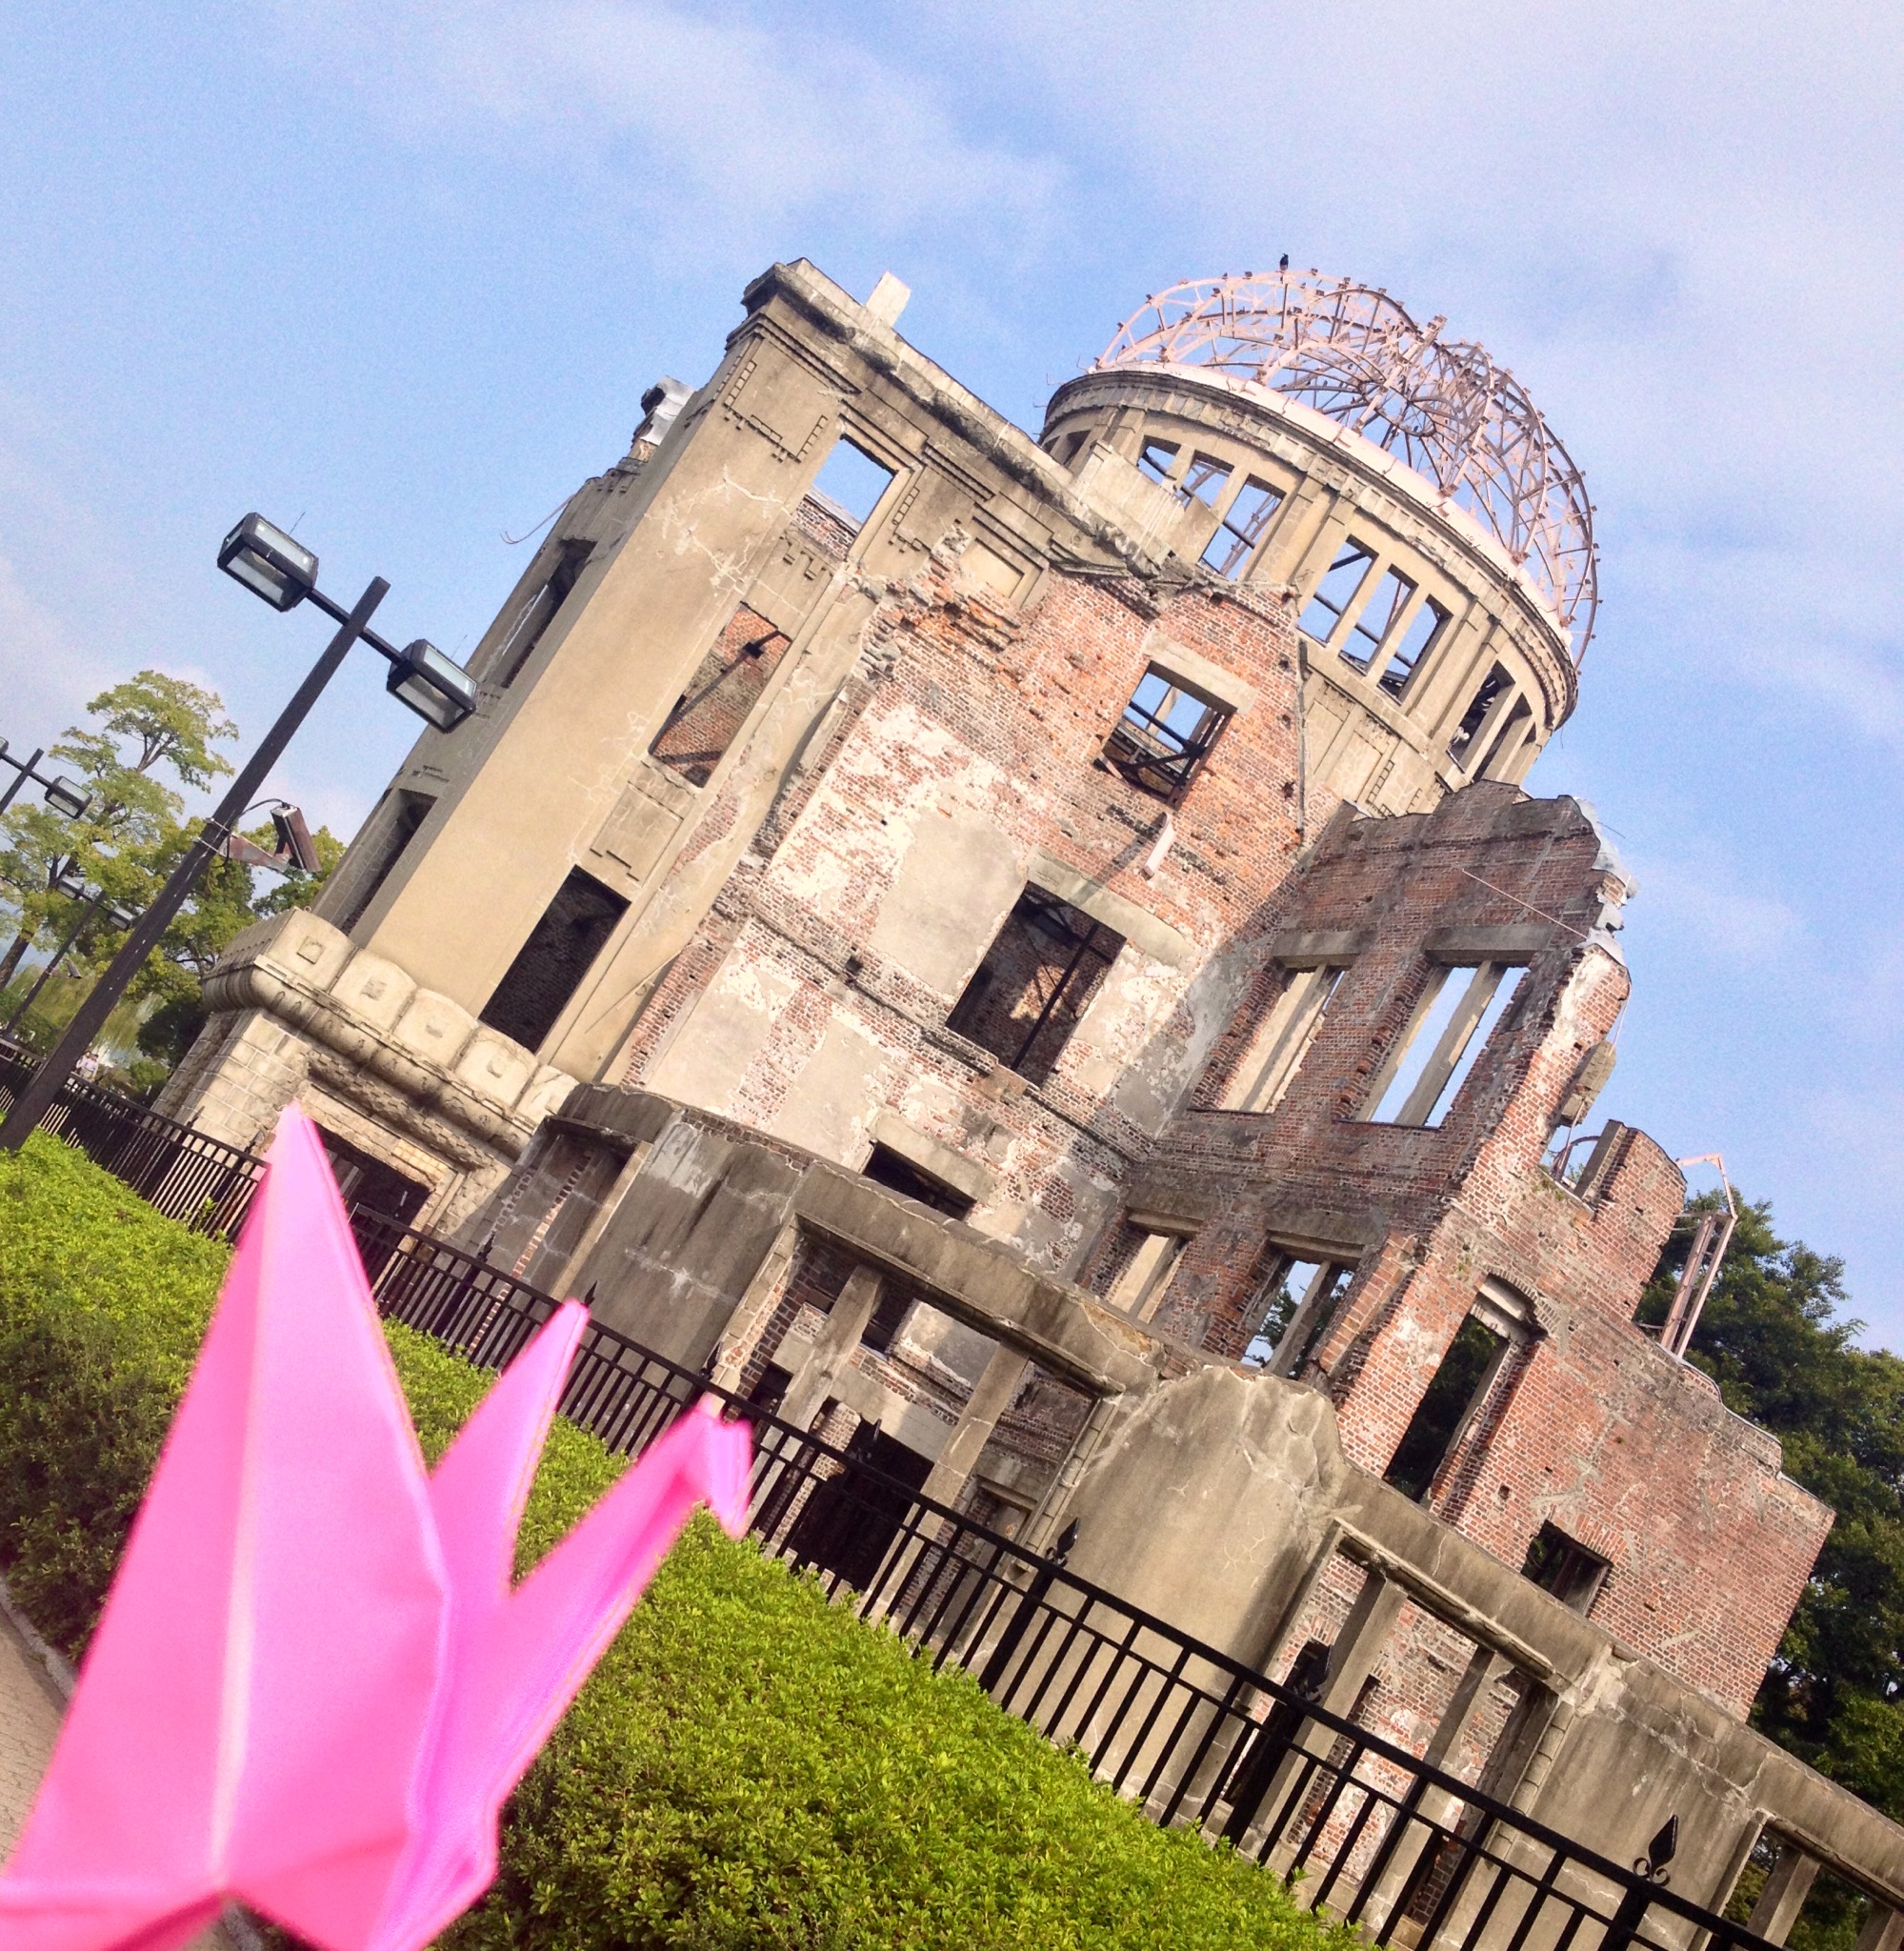 L'origami della Pace e la Cupola del Memoriale di Hiroshima, la foto dell'incontro.